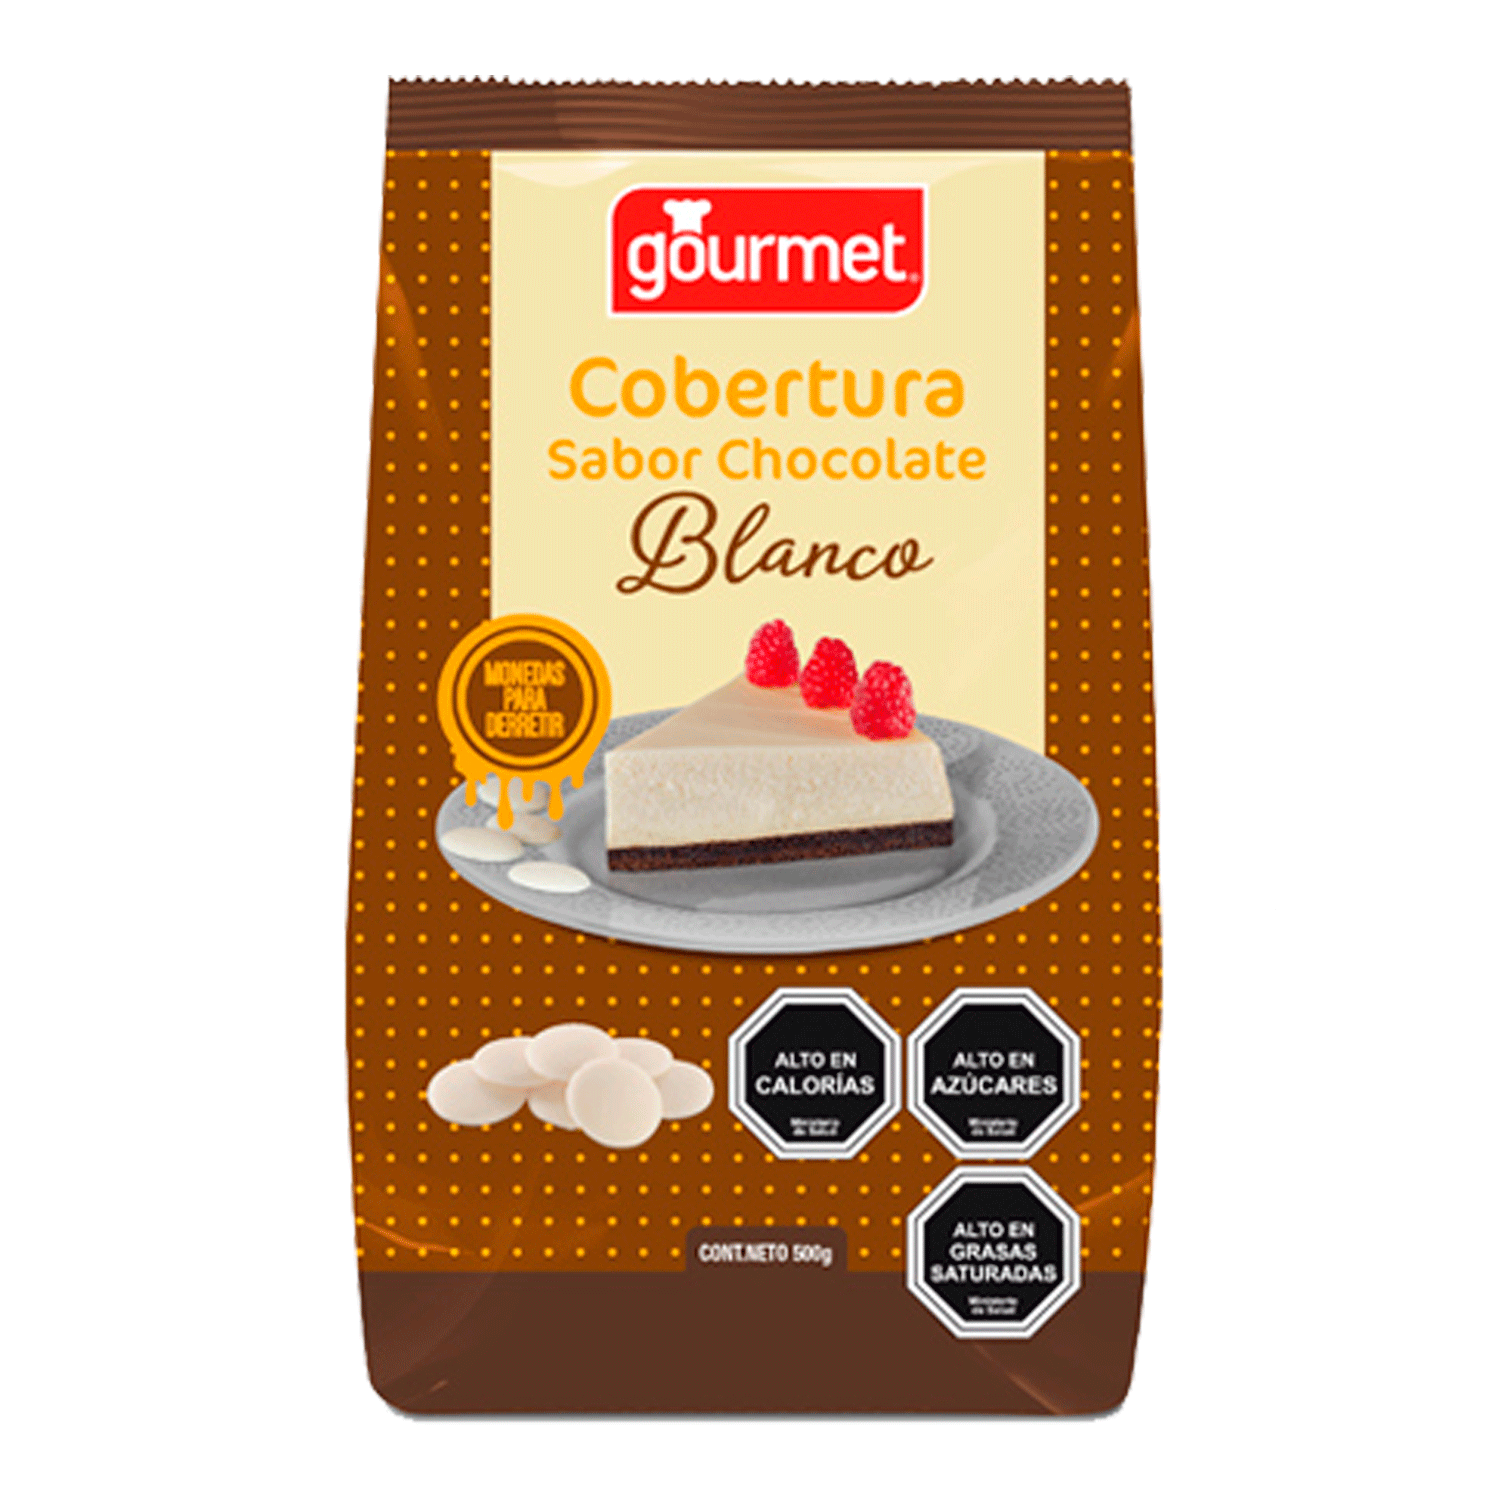  Torras Barra de chocolate blanco sin azúcar y sin gluten - Coco  (paquete de 4) : Comida Gourmet y Alimentos